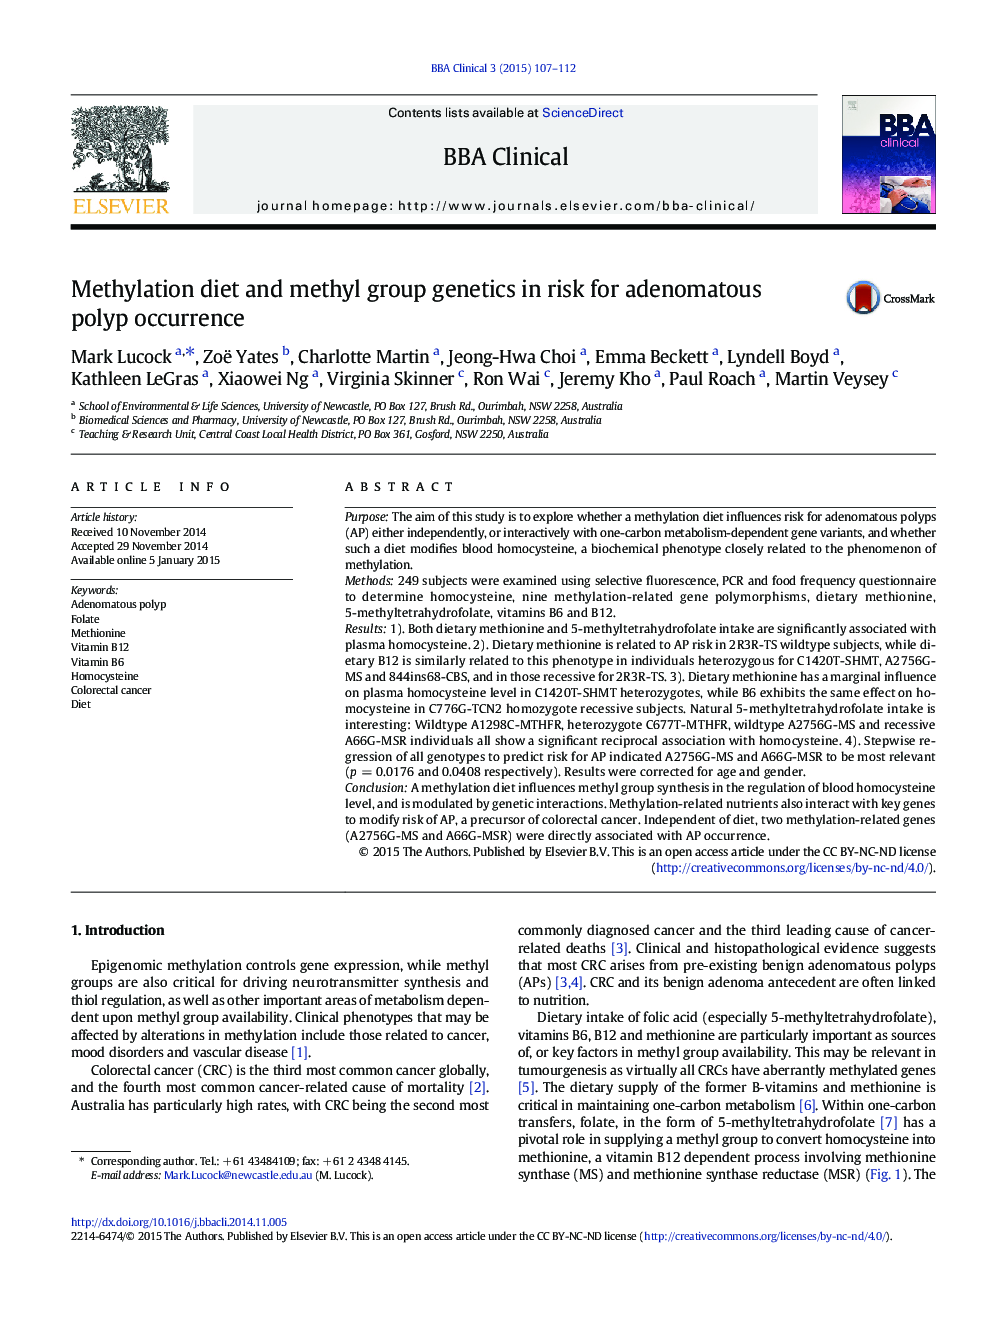 رژیم متیلاسیون و ژنتیک گروه متیل در معرض خطر ابتلا به پولیپ آدنوماتوز هستند 